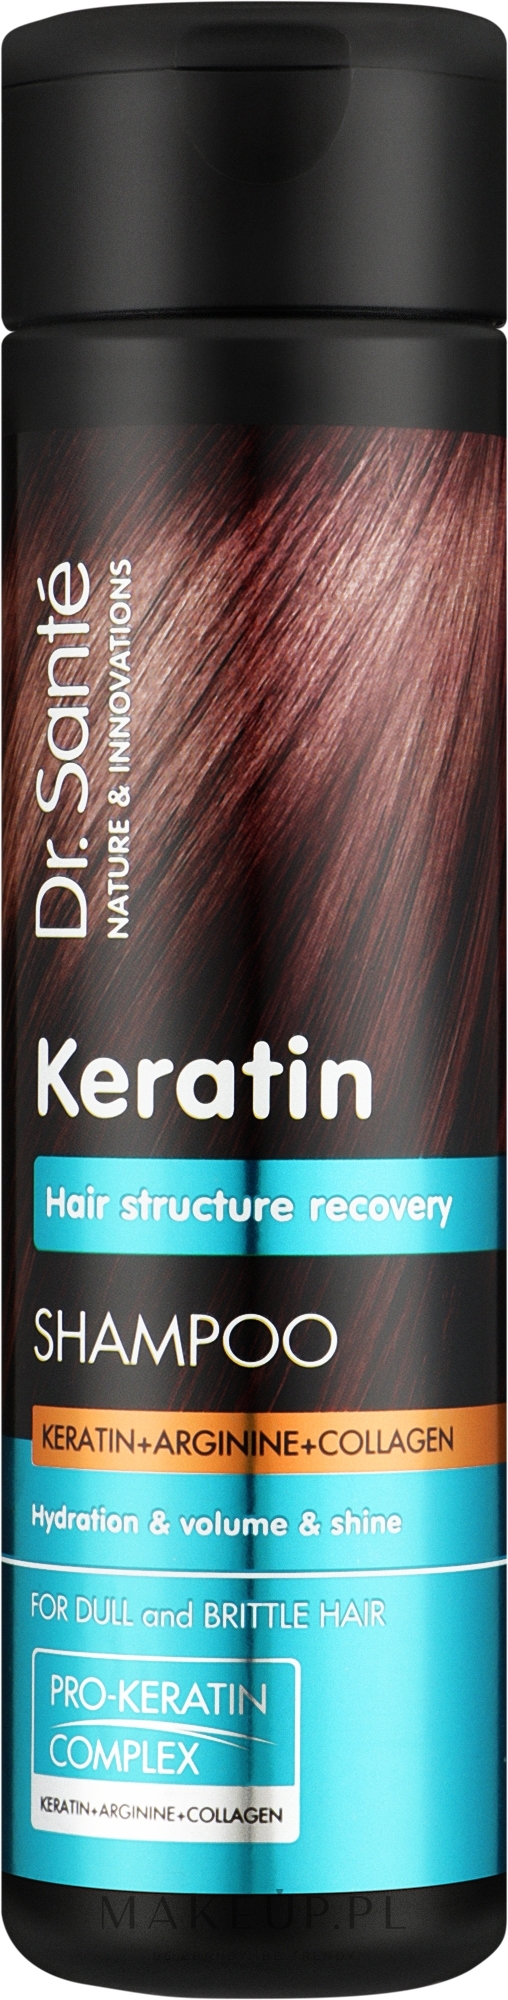 dr sante keratin szampon do włosów 250ml